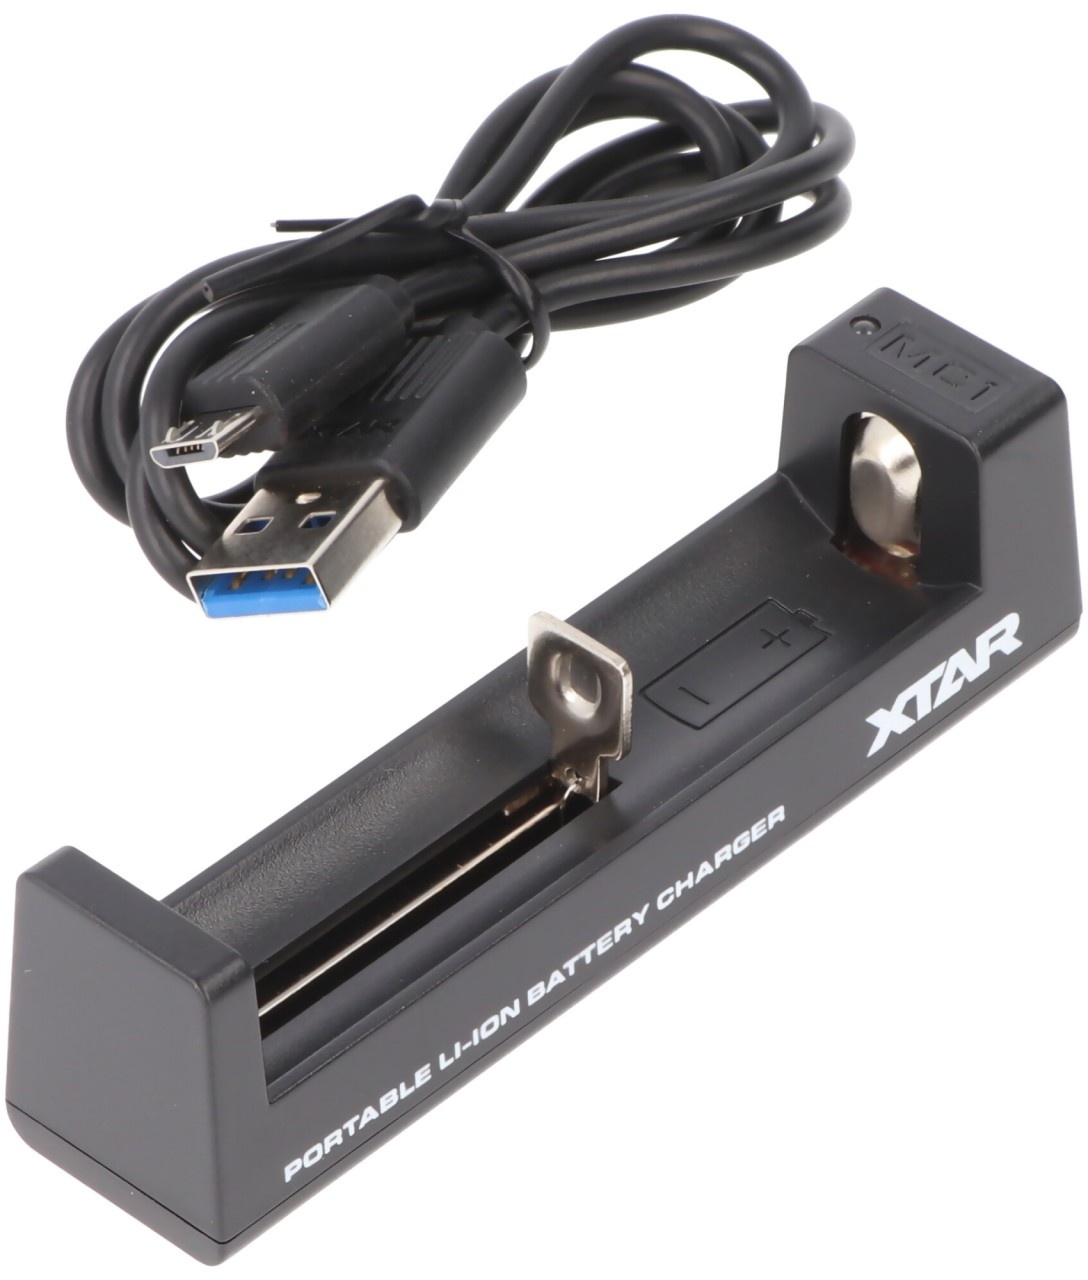 1-Schacht USB-Ladegerät mit bis zu 0,5Ah Ladestrom